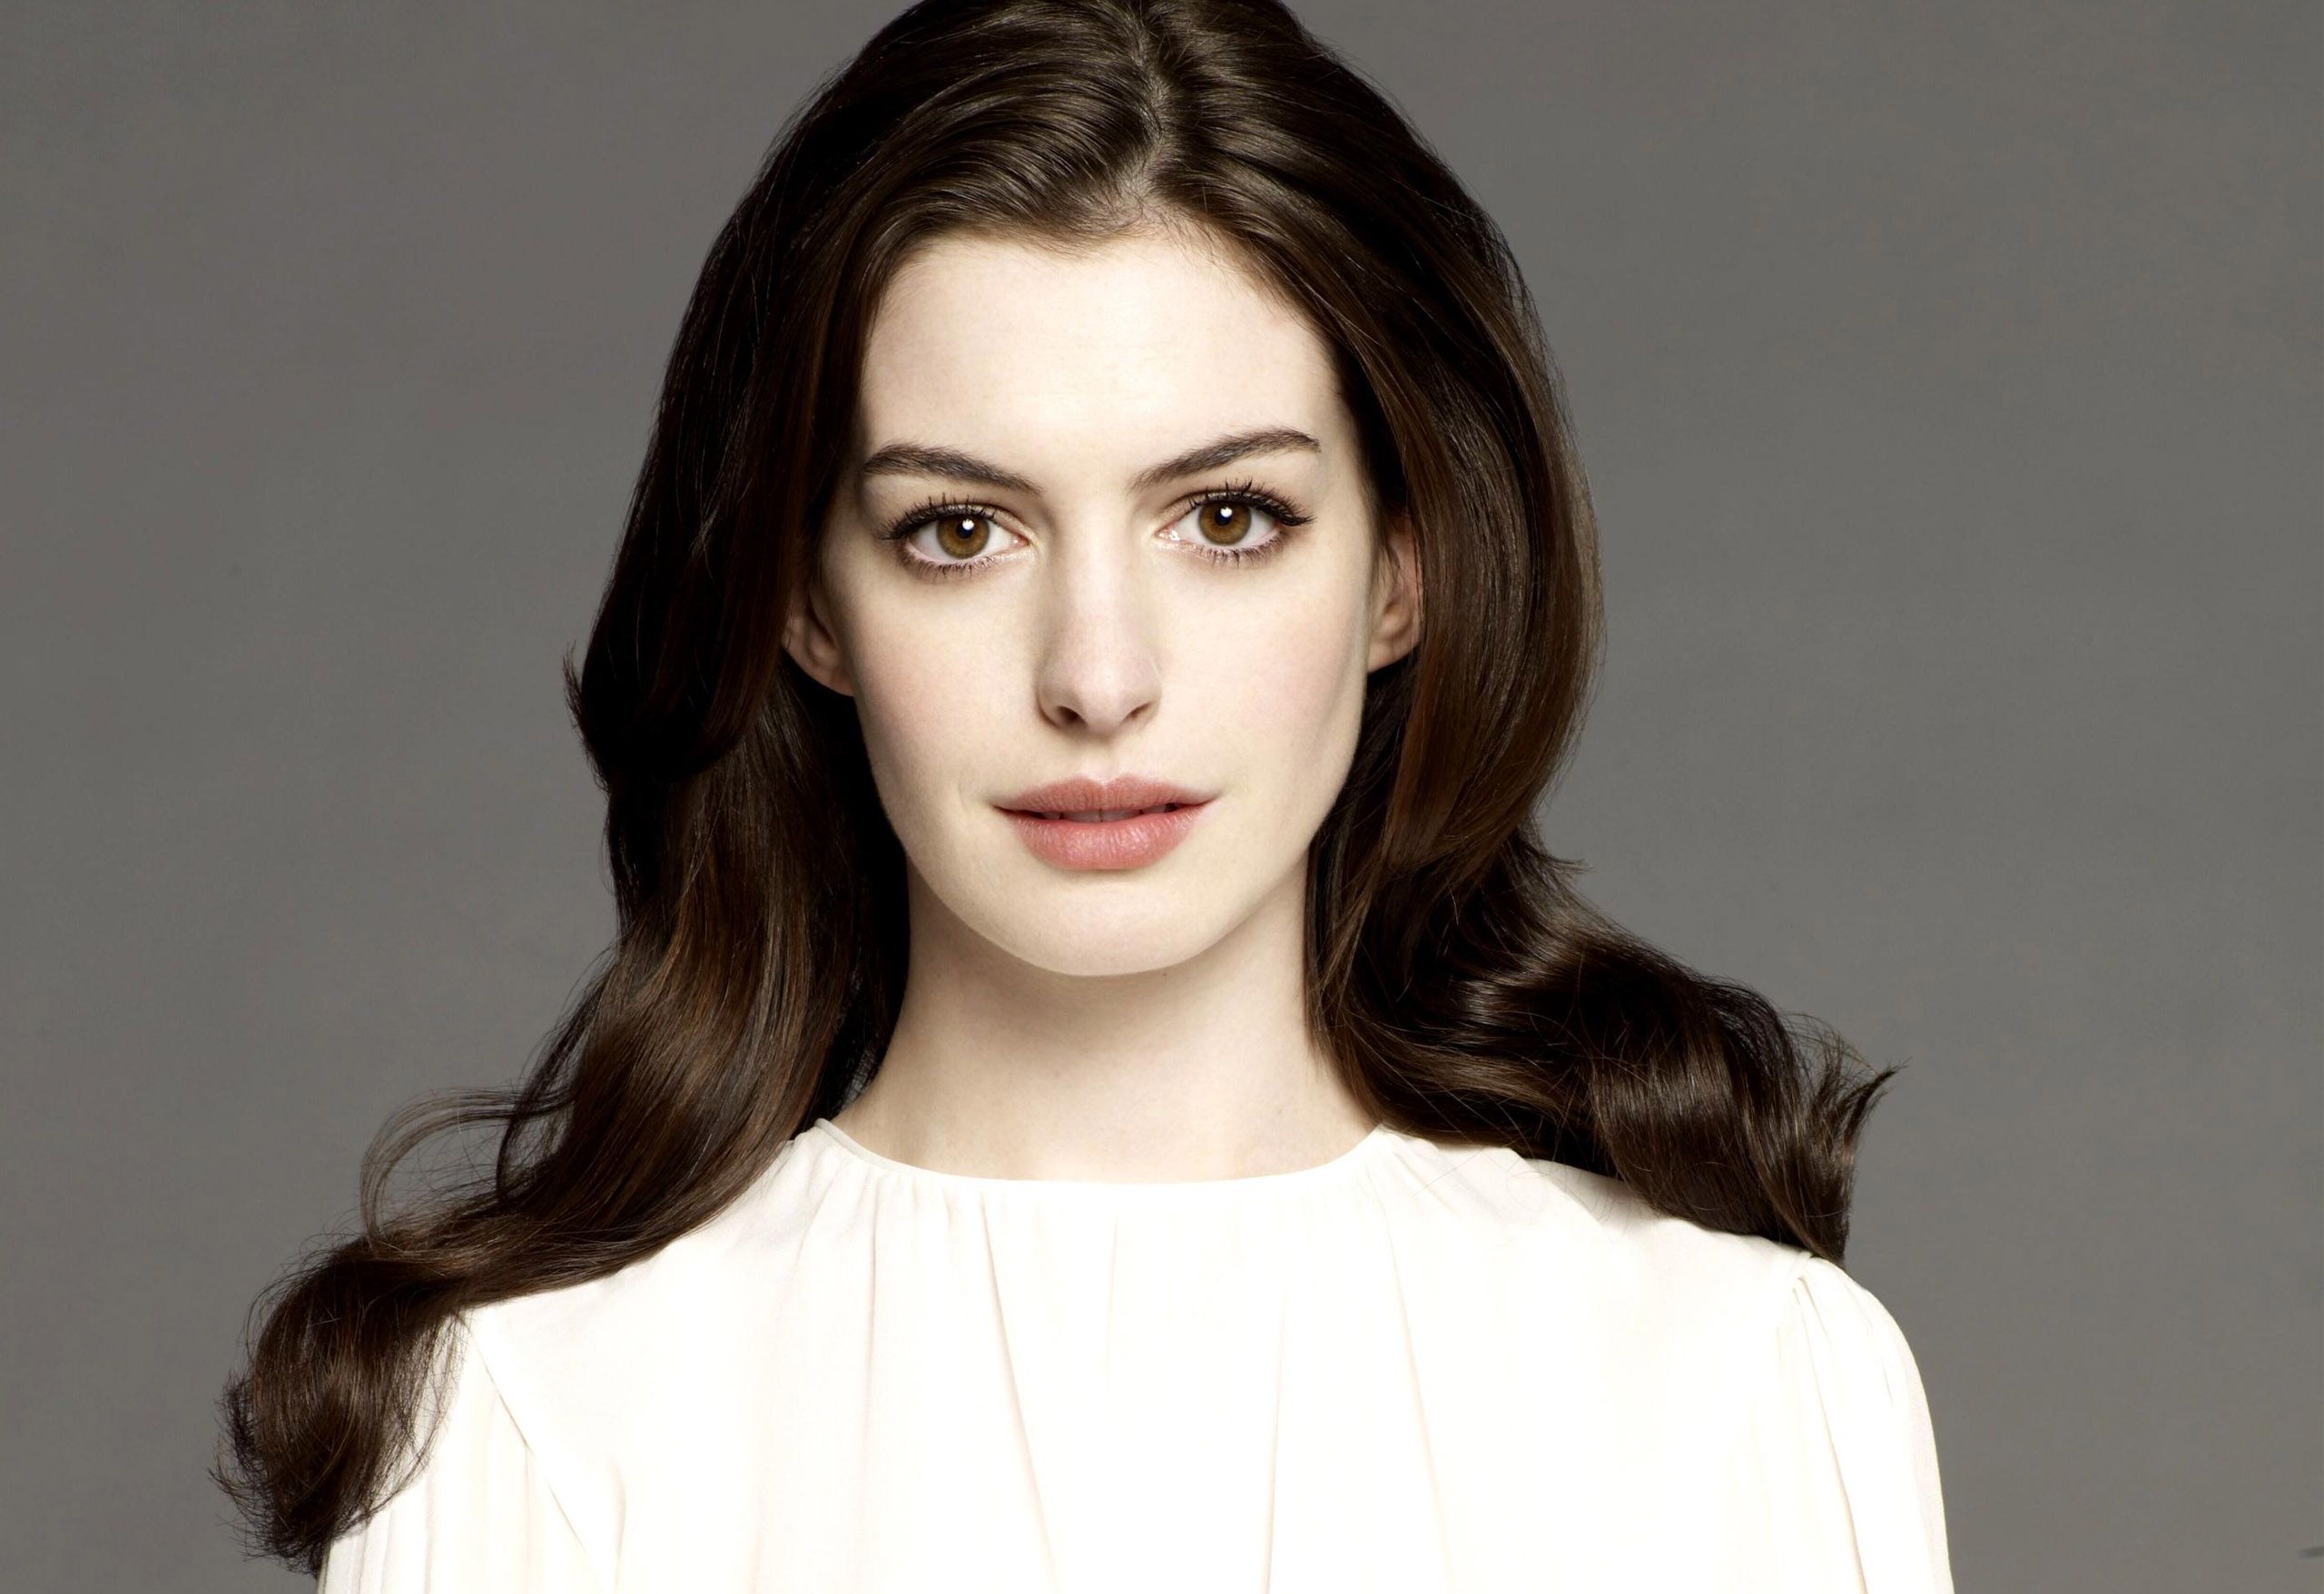 Anne Hathaway devance les critiques avant sa transformation physique